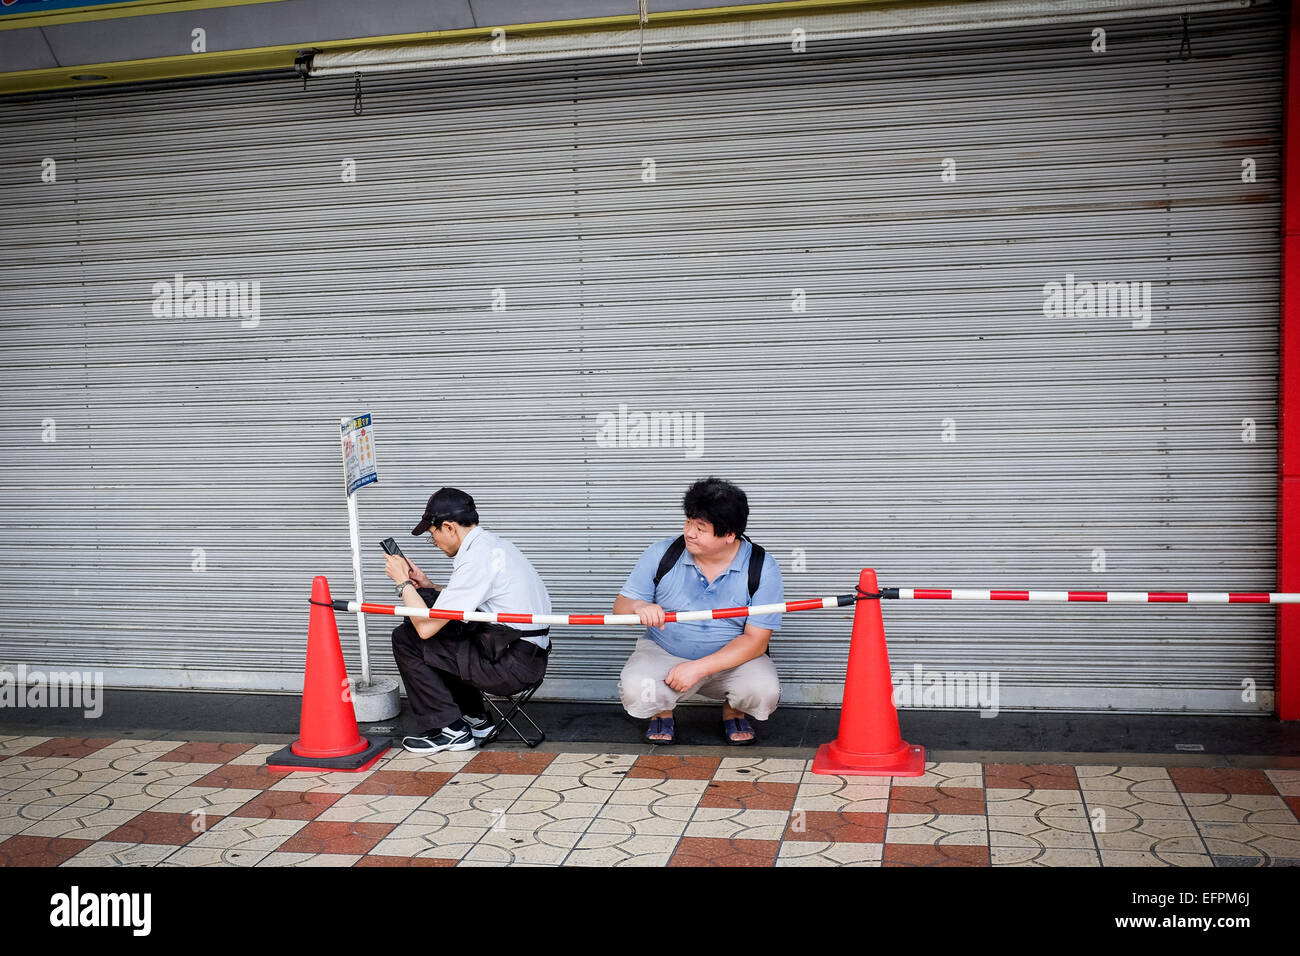 Zwei Personen bilden eine kurze Warteschlange in Osaka, Japan. Stockfoto